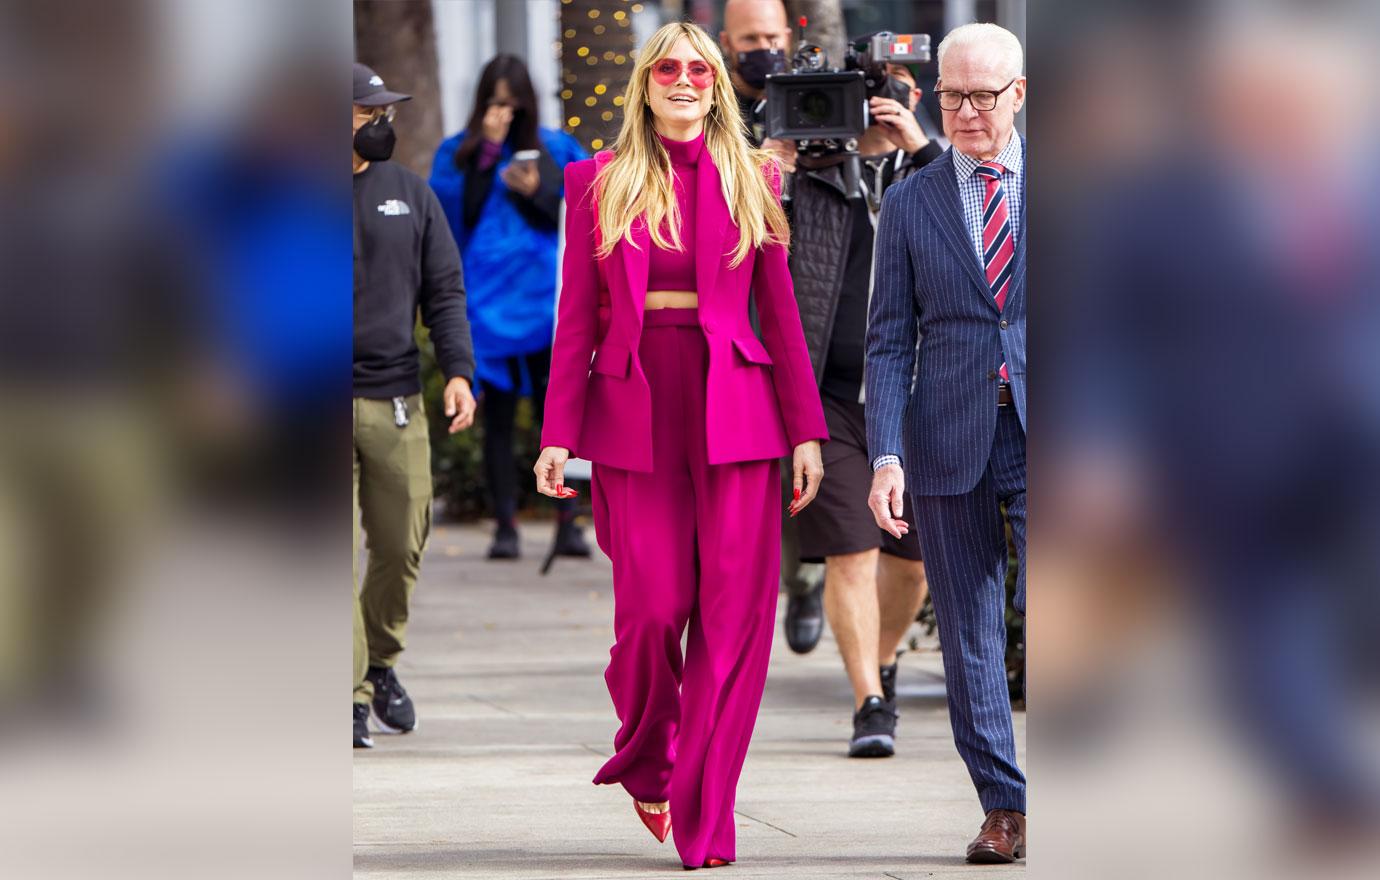 Heidi Klum Styles Stunning Pink Pantsuit In Los Angeles